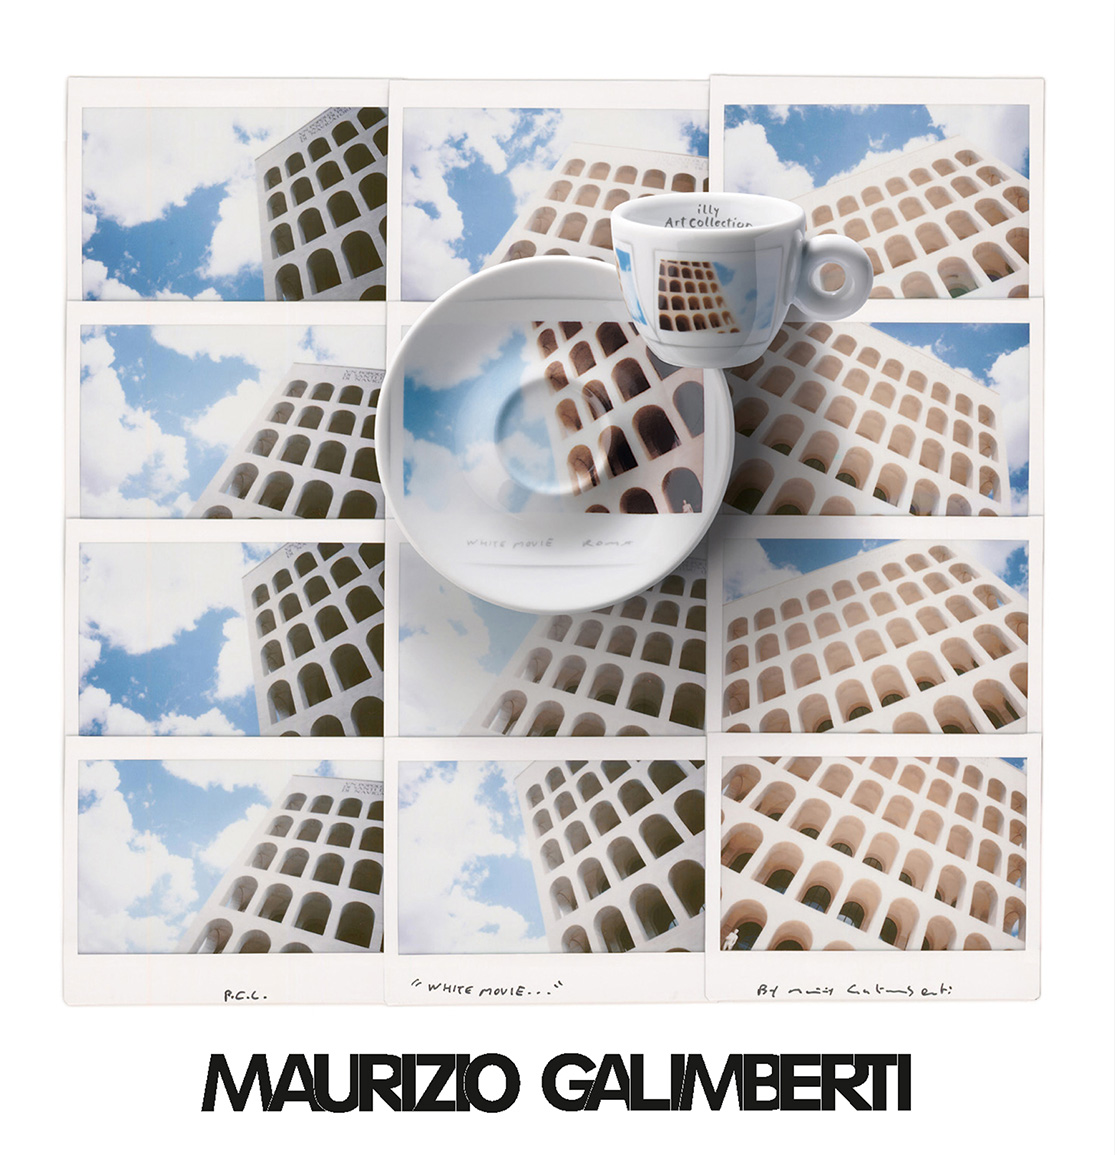 ART COLLECTION MAURIZIO GALIMBERTI